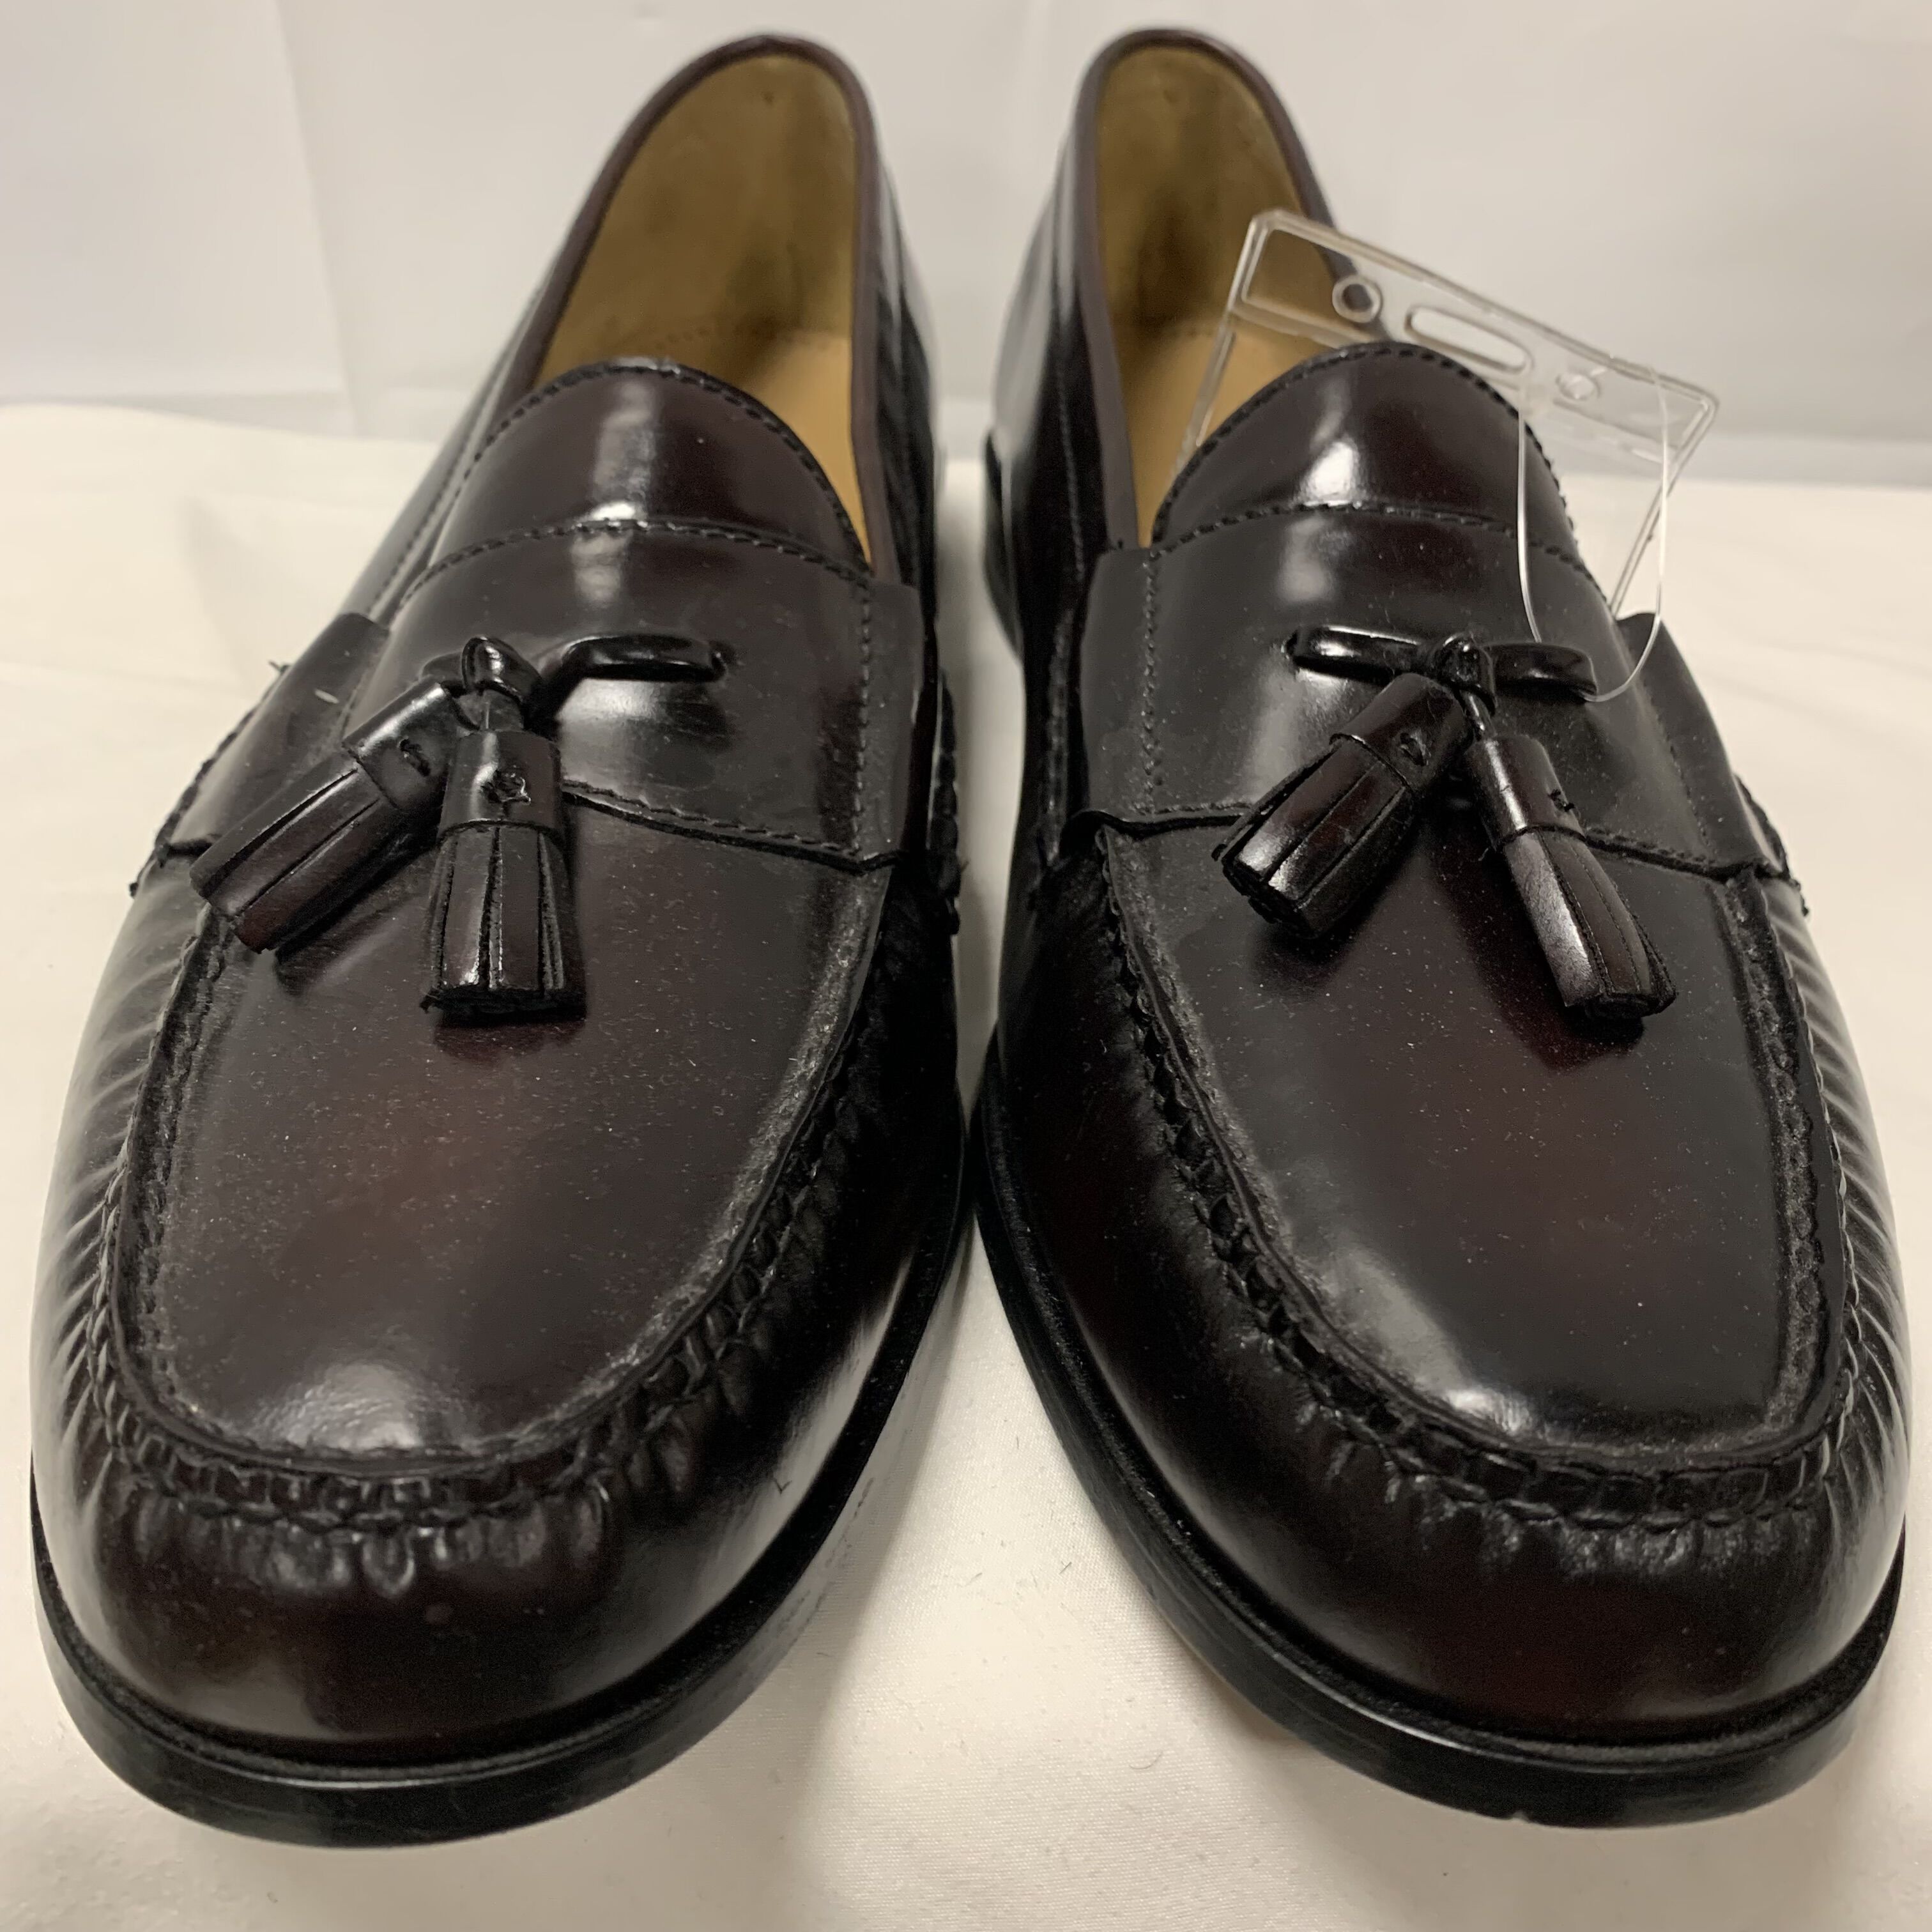 men’s dress shoes size 16